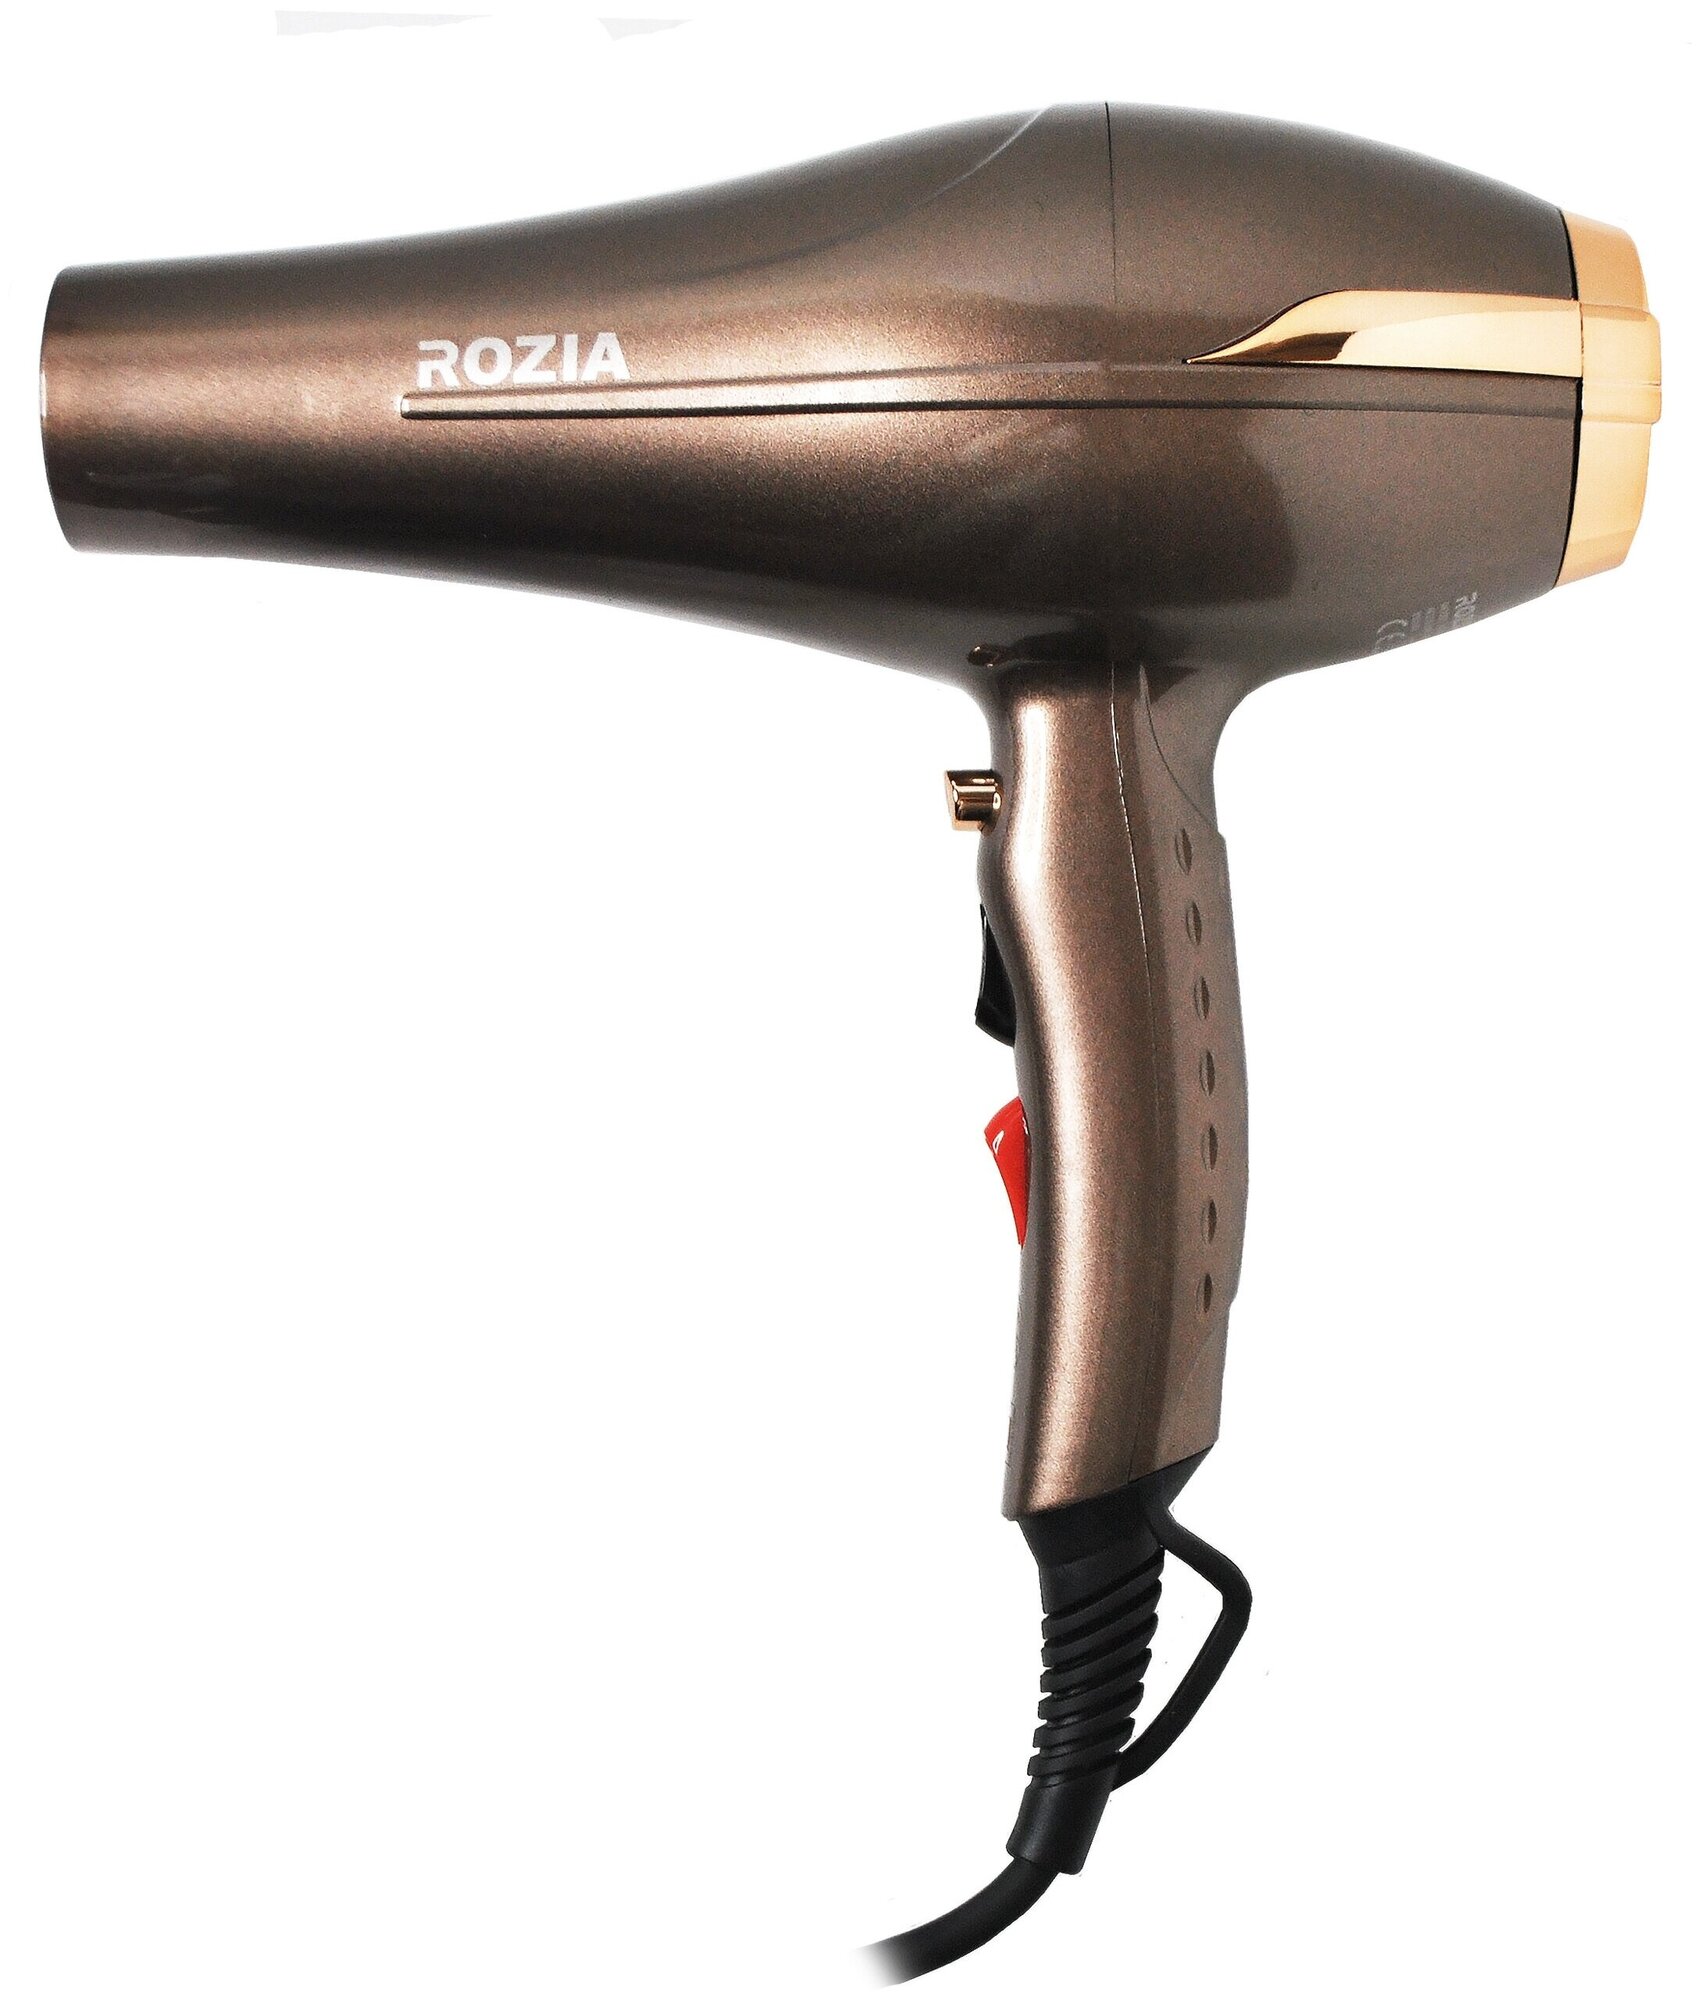 Фен для волос Rozia Фен HC8600, Профессиональный фен с сенсорной ручкой HC8600, Фен 8000W, коричневый